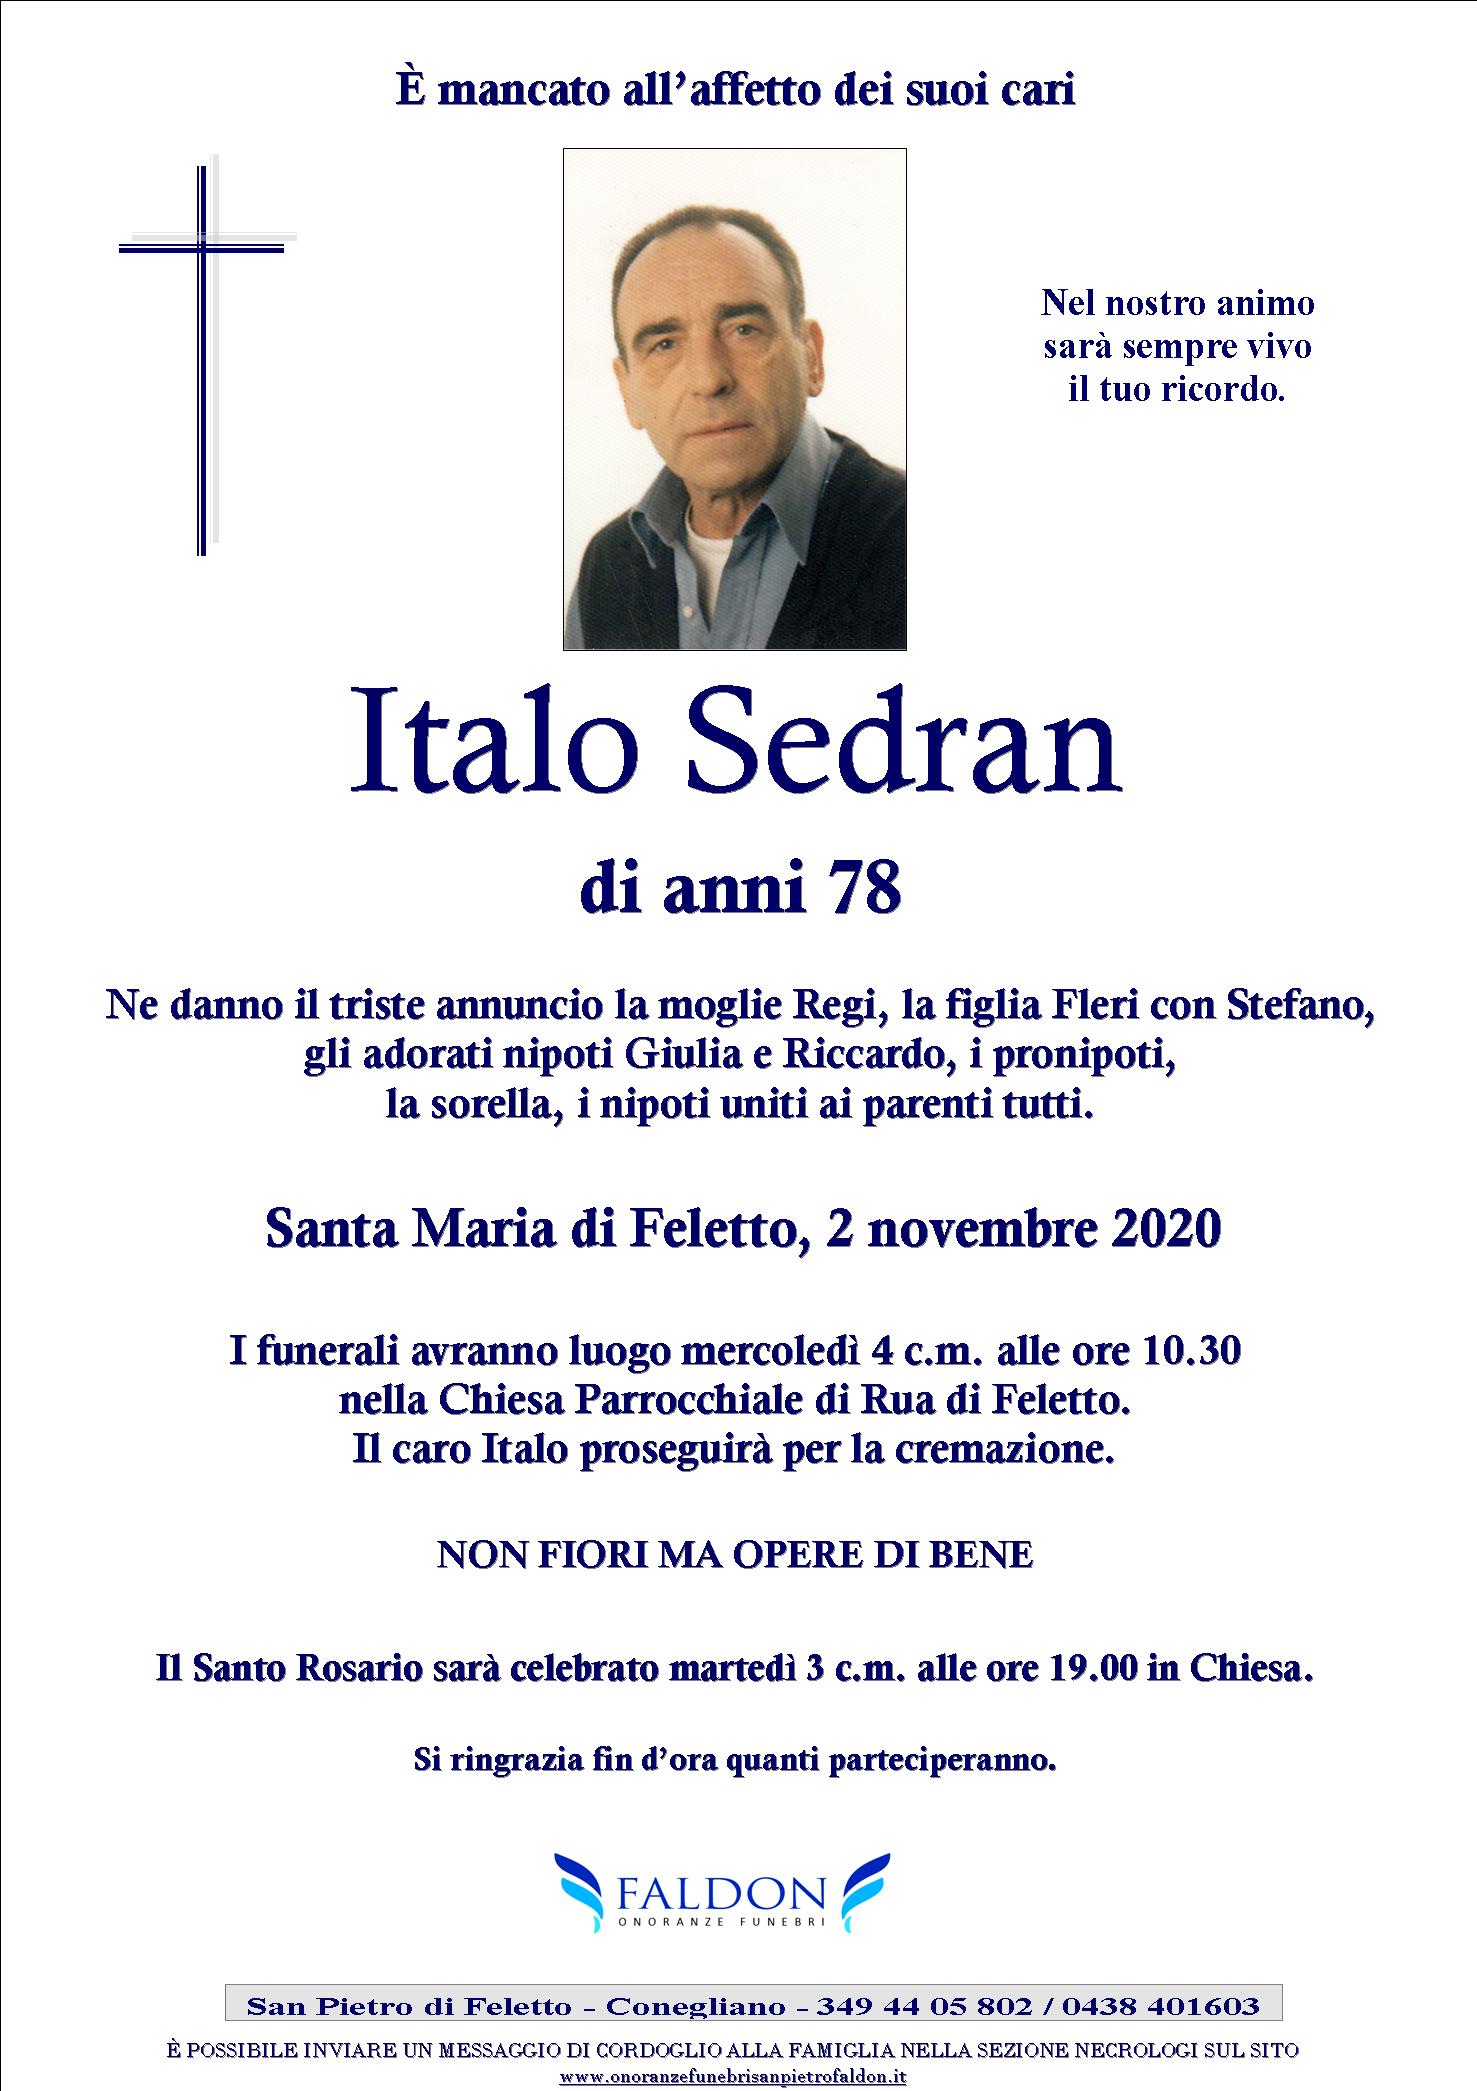 Italo Sedran